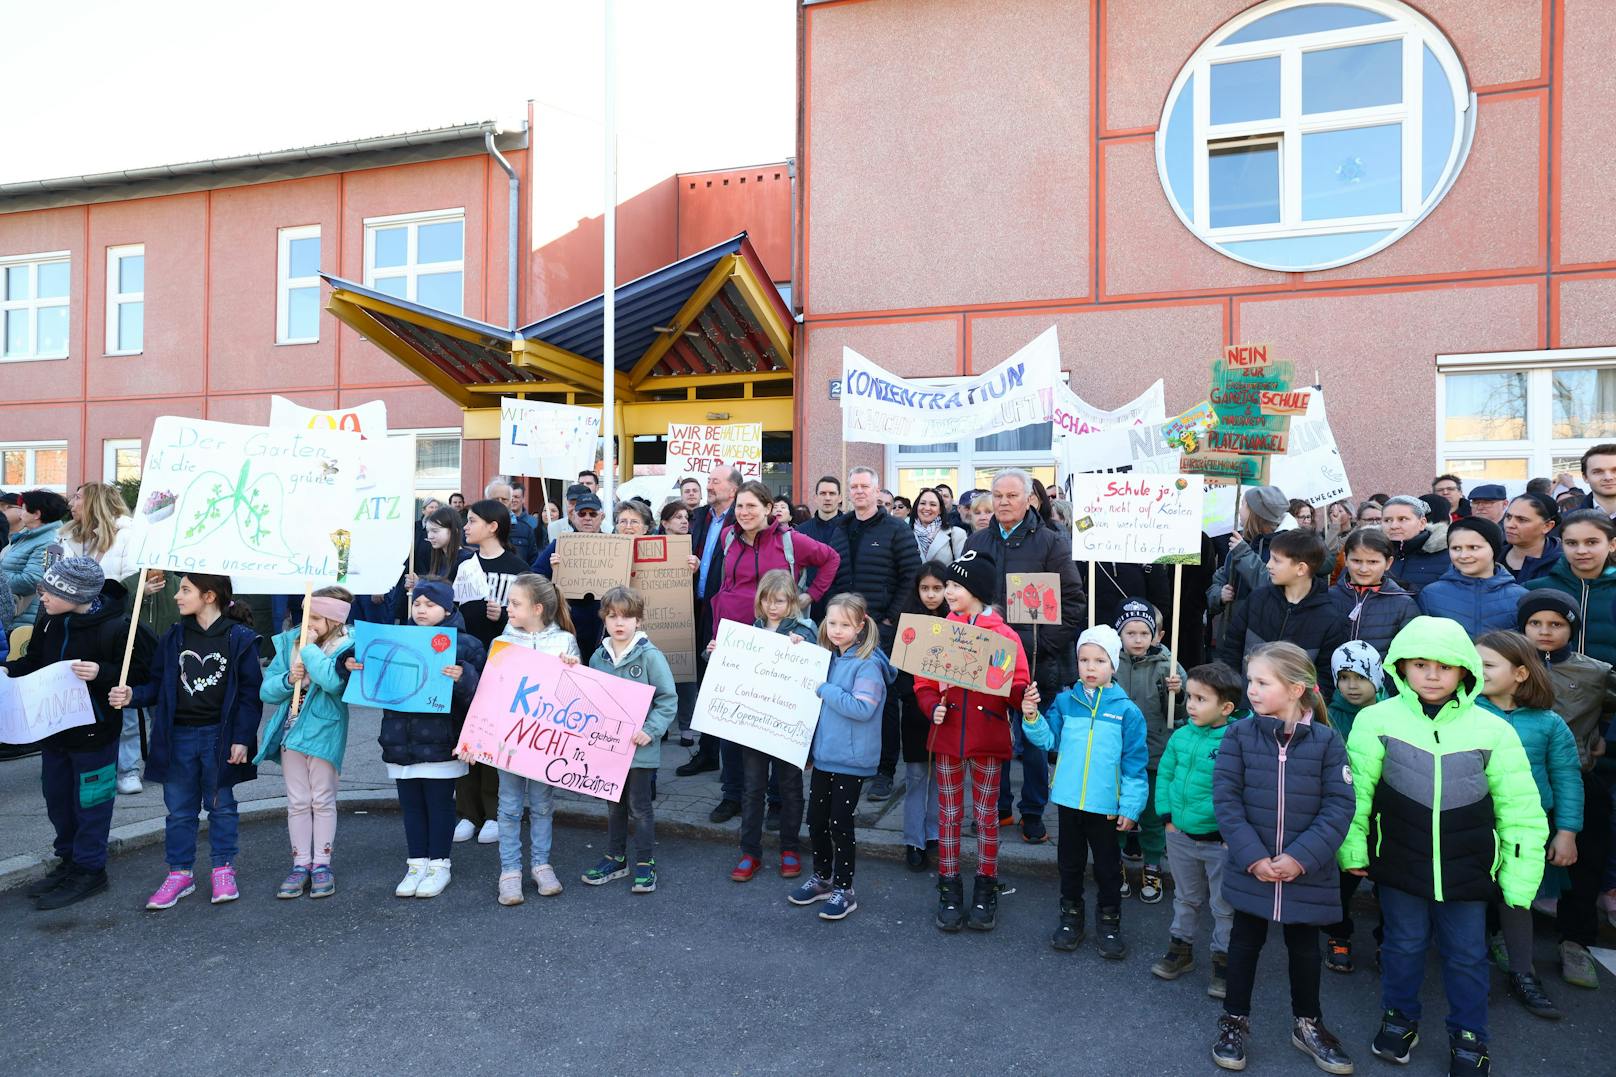 Erboste Eltern und Lehrer demonstrieren gegen die geplanten Containerklassen in der Volksschule Rittingergasse in Floridsdorf.